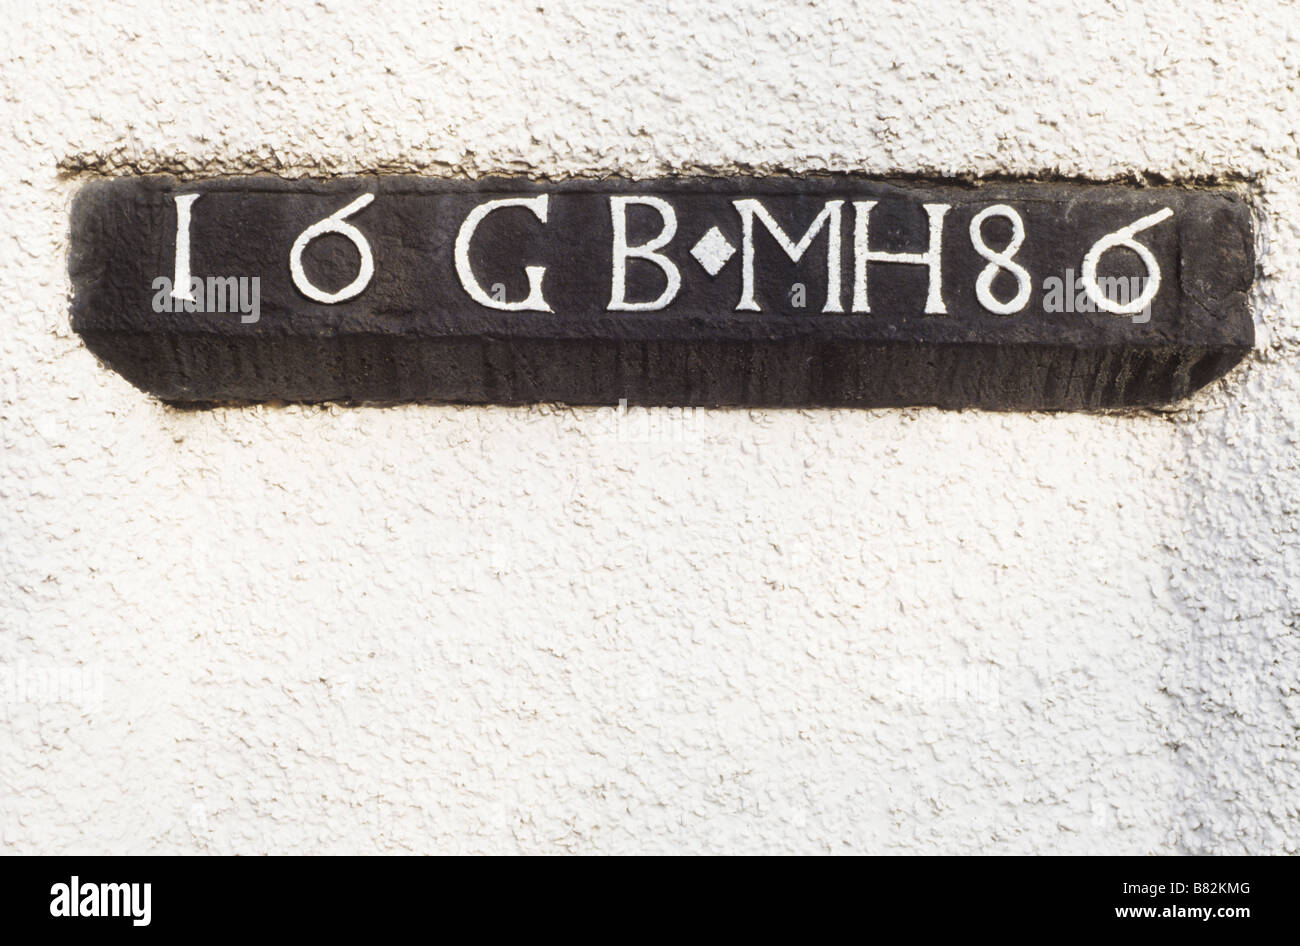 Mariage Falkland date 1686 Linteau initiales GO et MH Scotland UK town house Banque D'Images